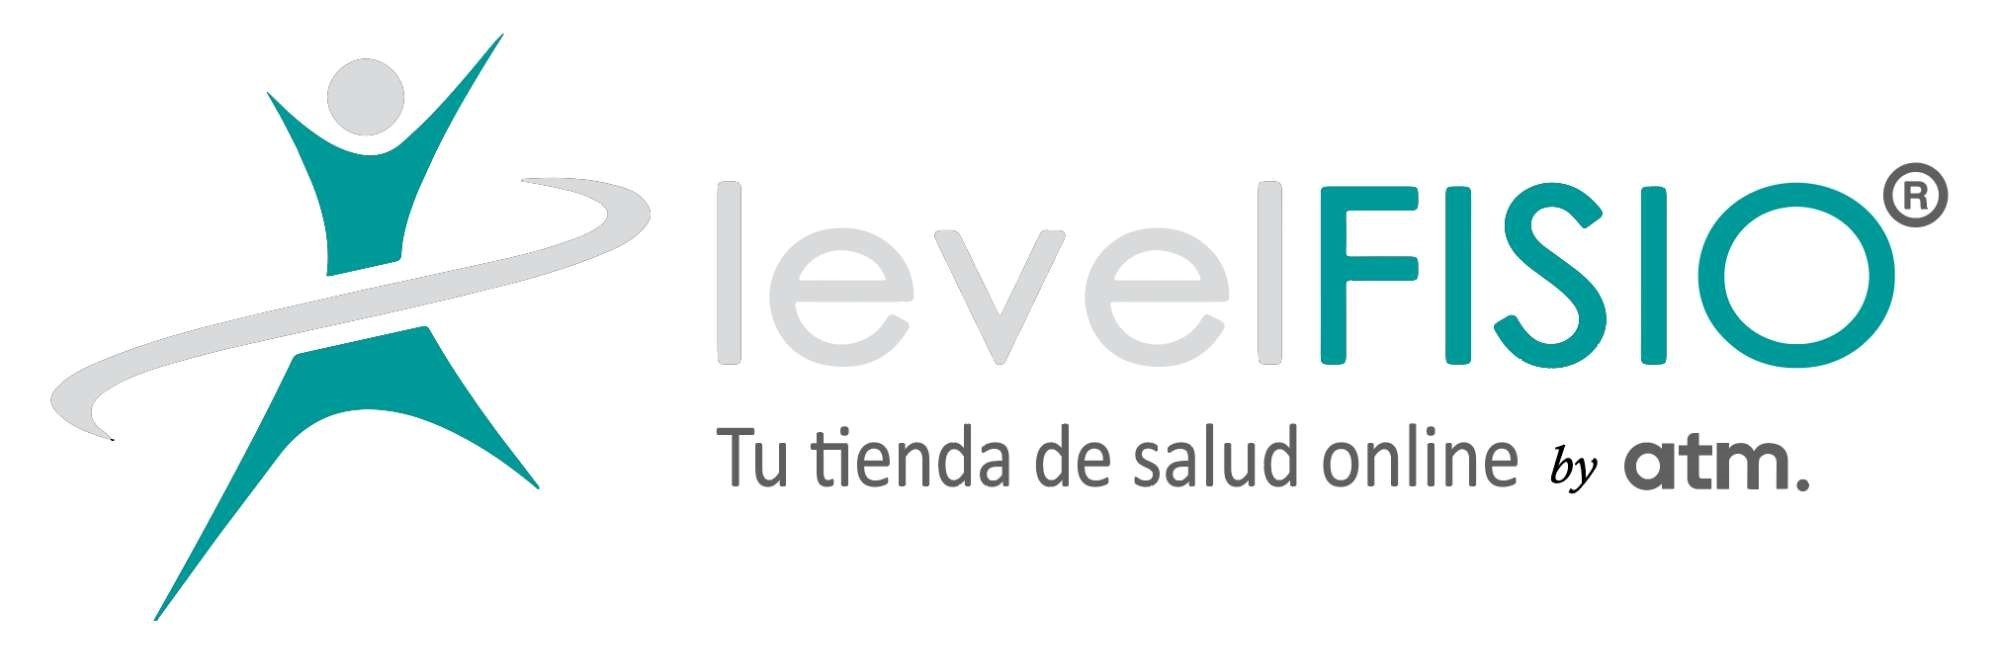 Levelfisio